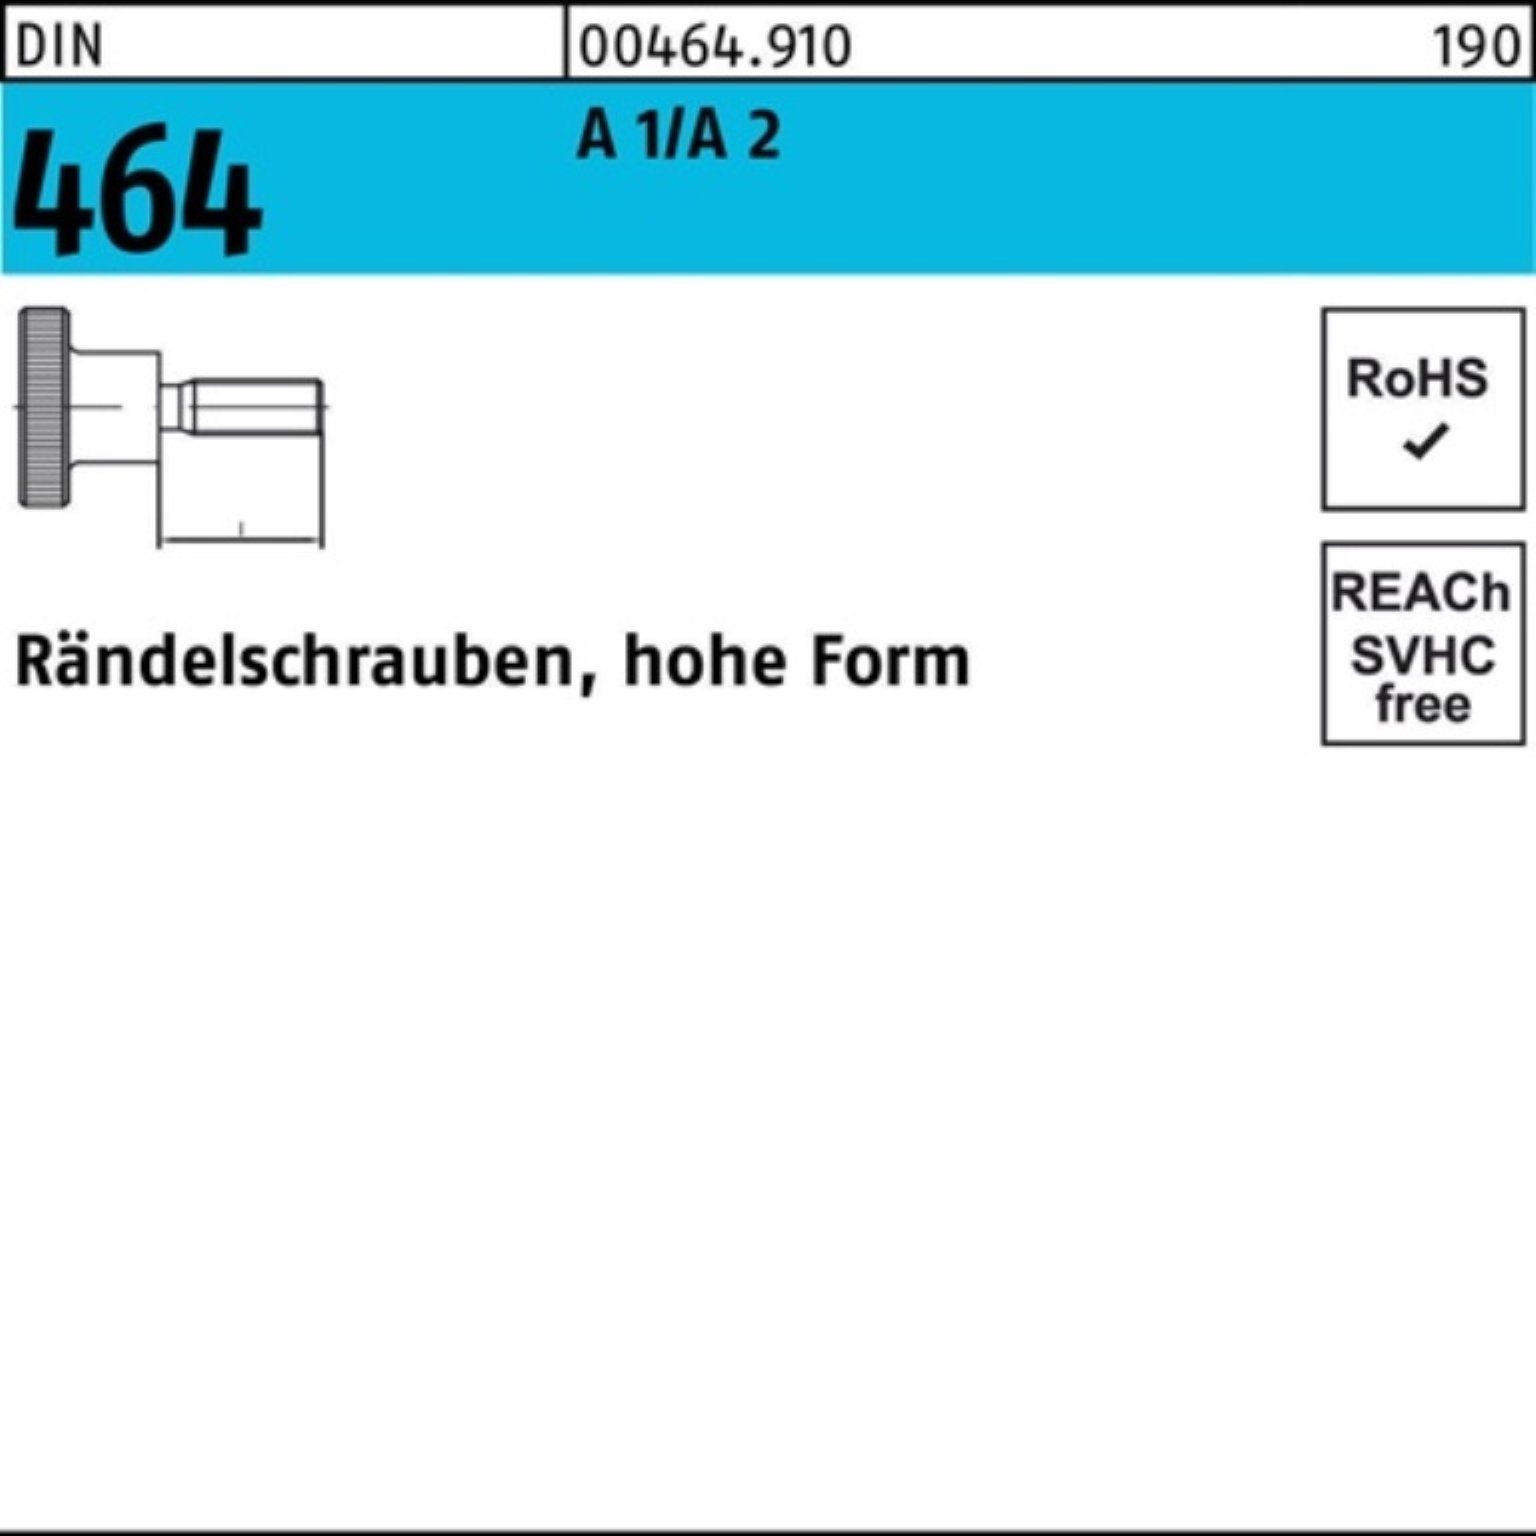 Reyher Schraube 100er Pack DIN hohe Stück D A 25 464 10 1/A Rändelschraube 2 FormM8x